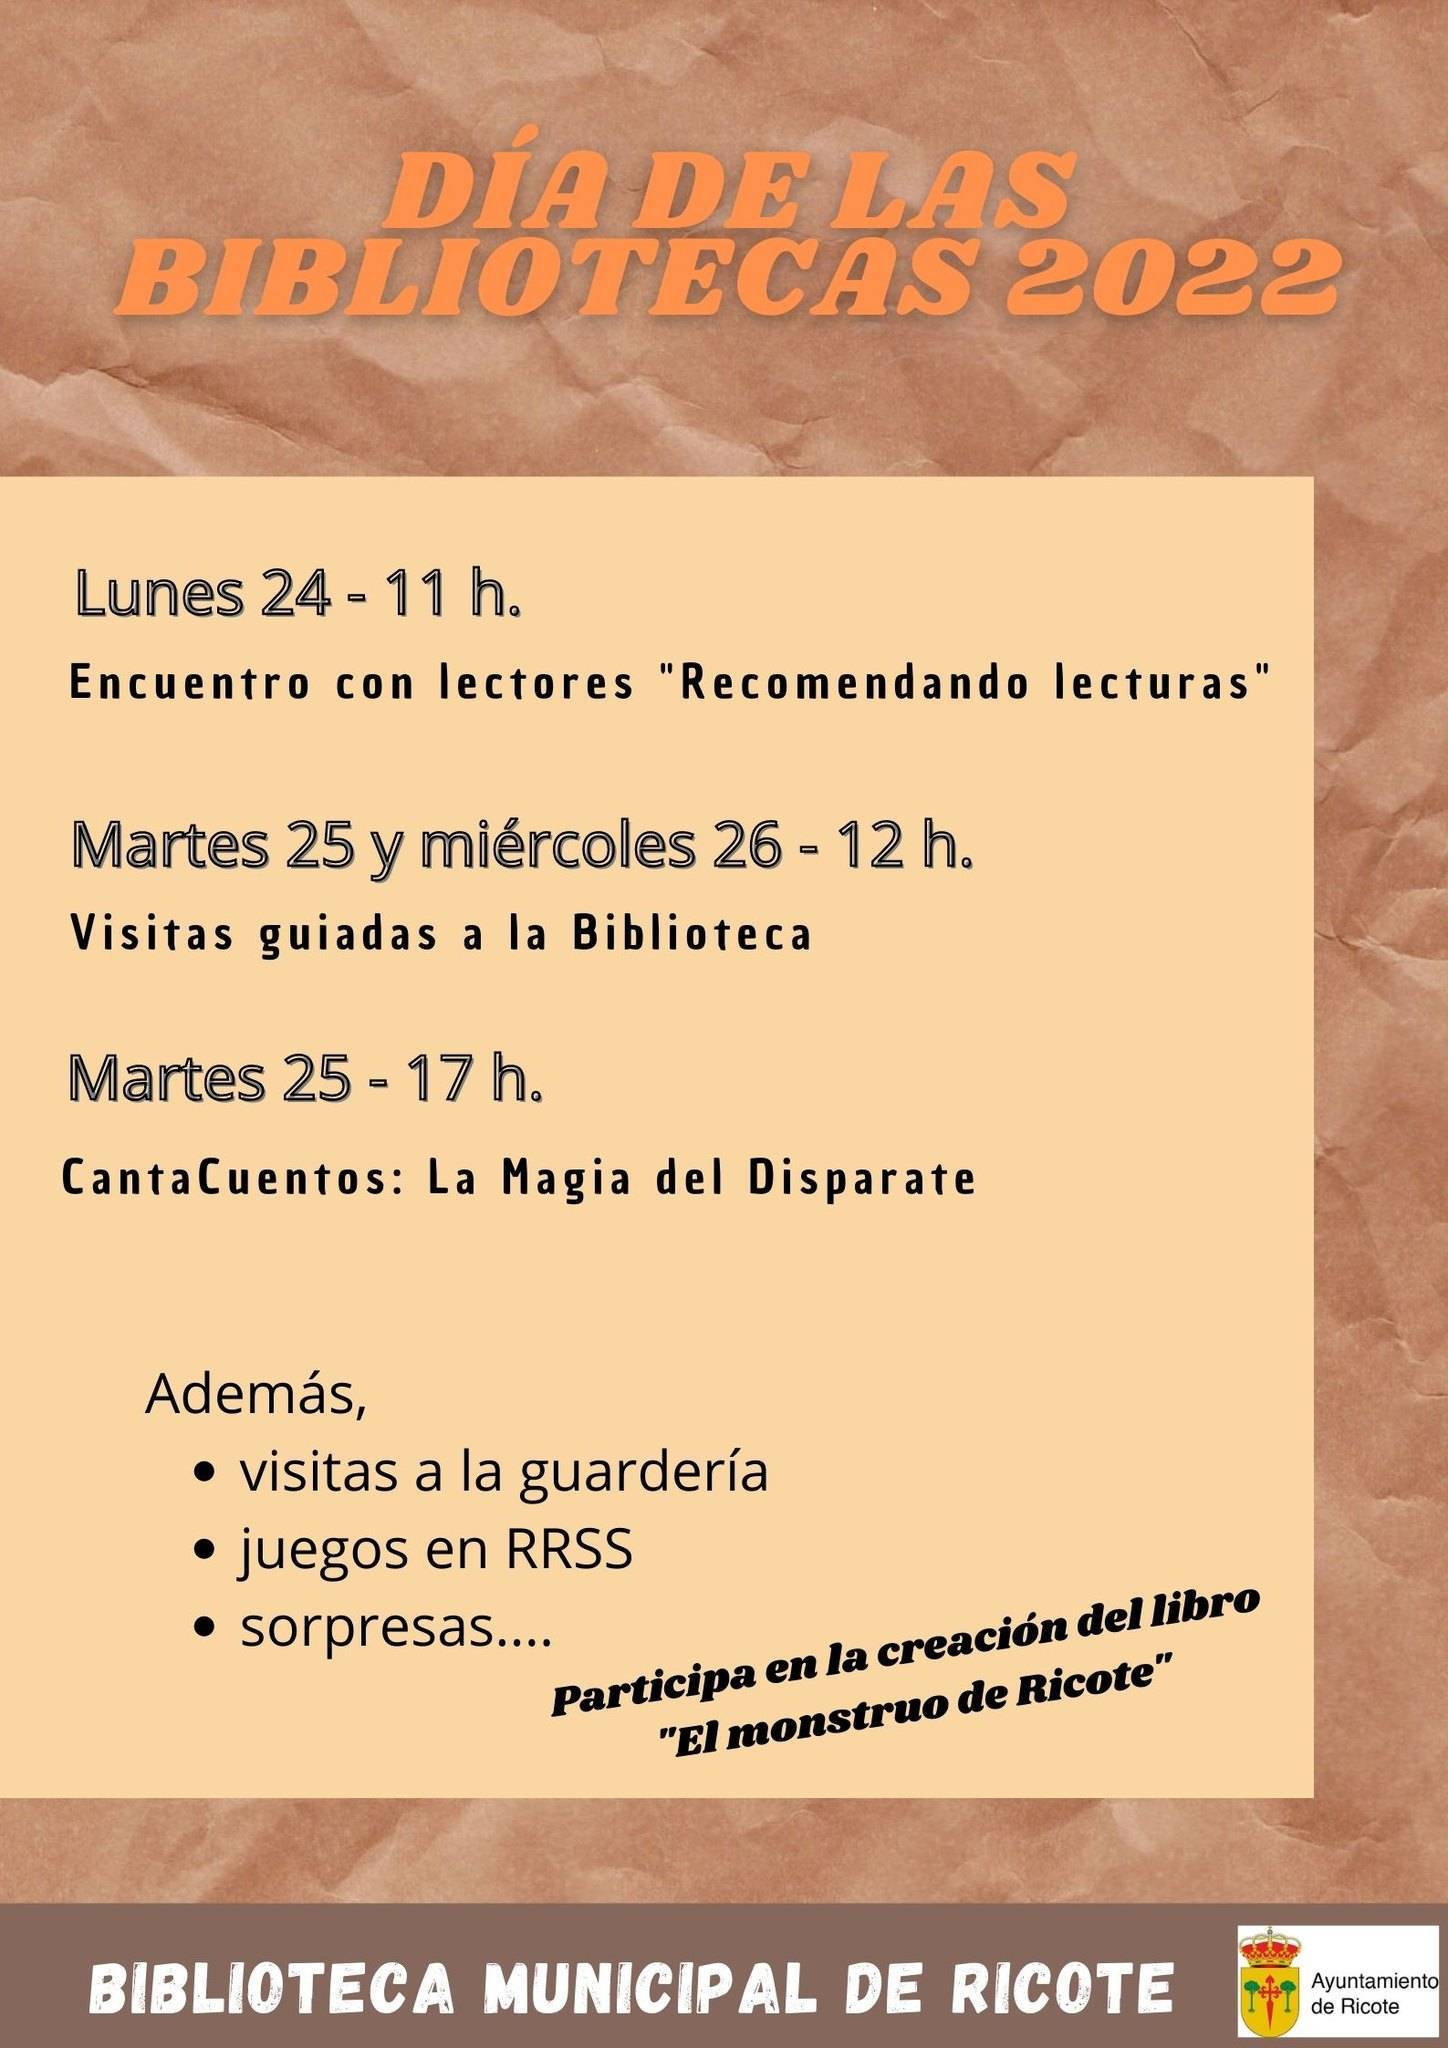 Día de las Bibliotecas (2022) - Ricote (Murcia)